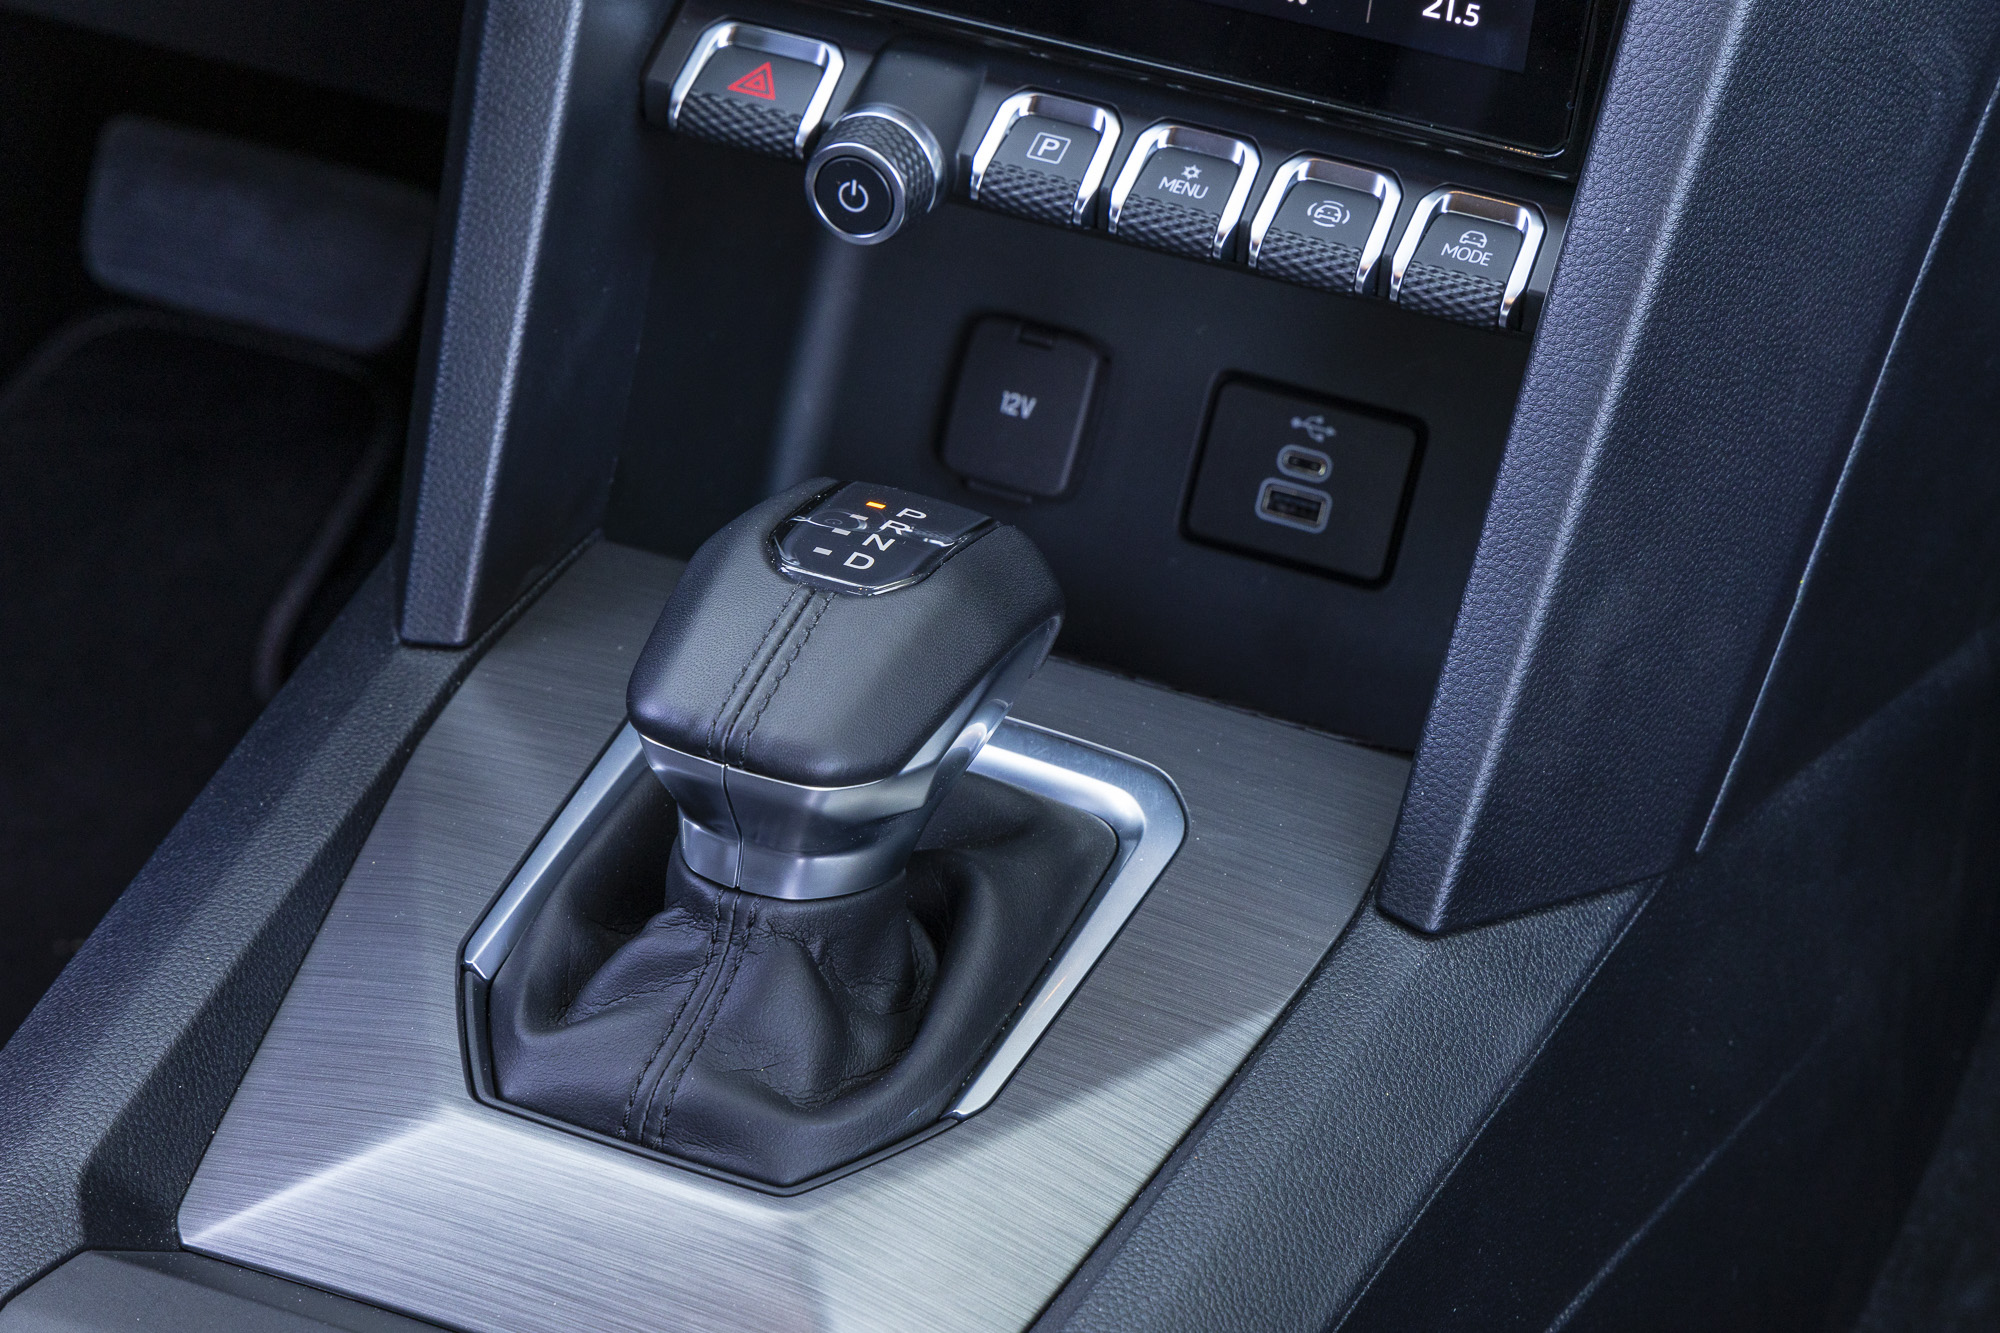 Test drive: Volkswagen Amarok 3.0 TDI V6 240 PS 4ΜΟΤΙΟΝ, Photo © DRIVE Media Group/Thanassis Koutsogiannis